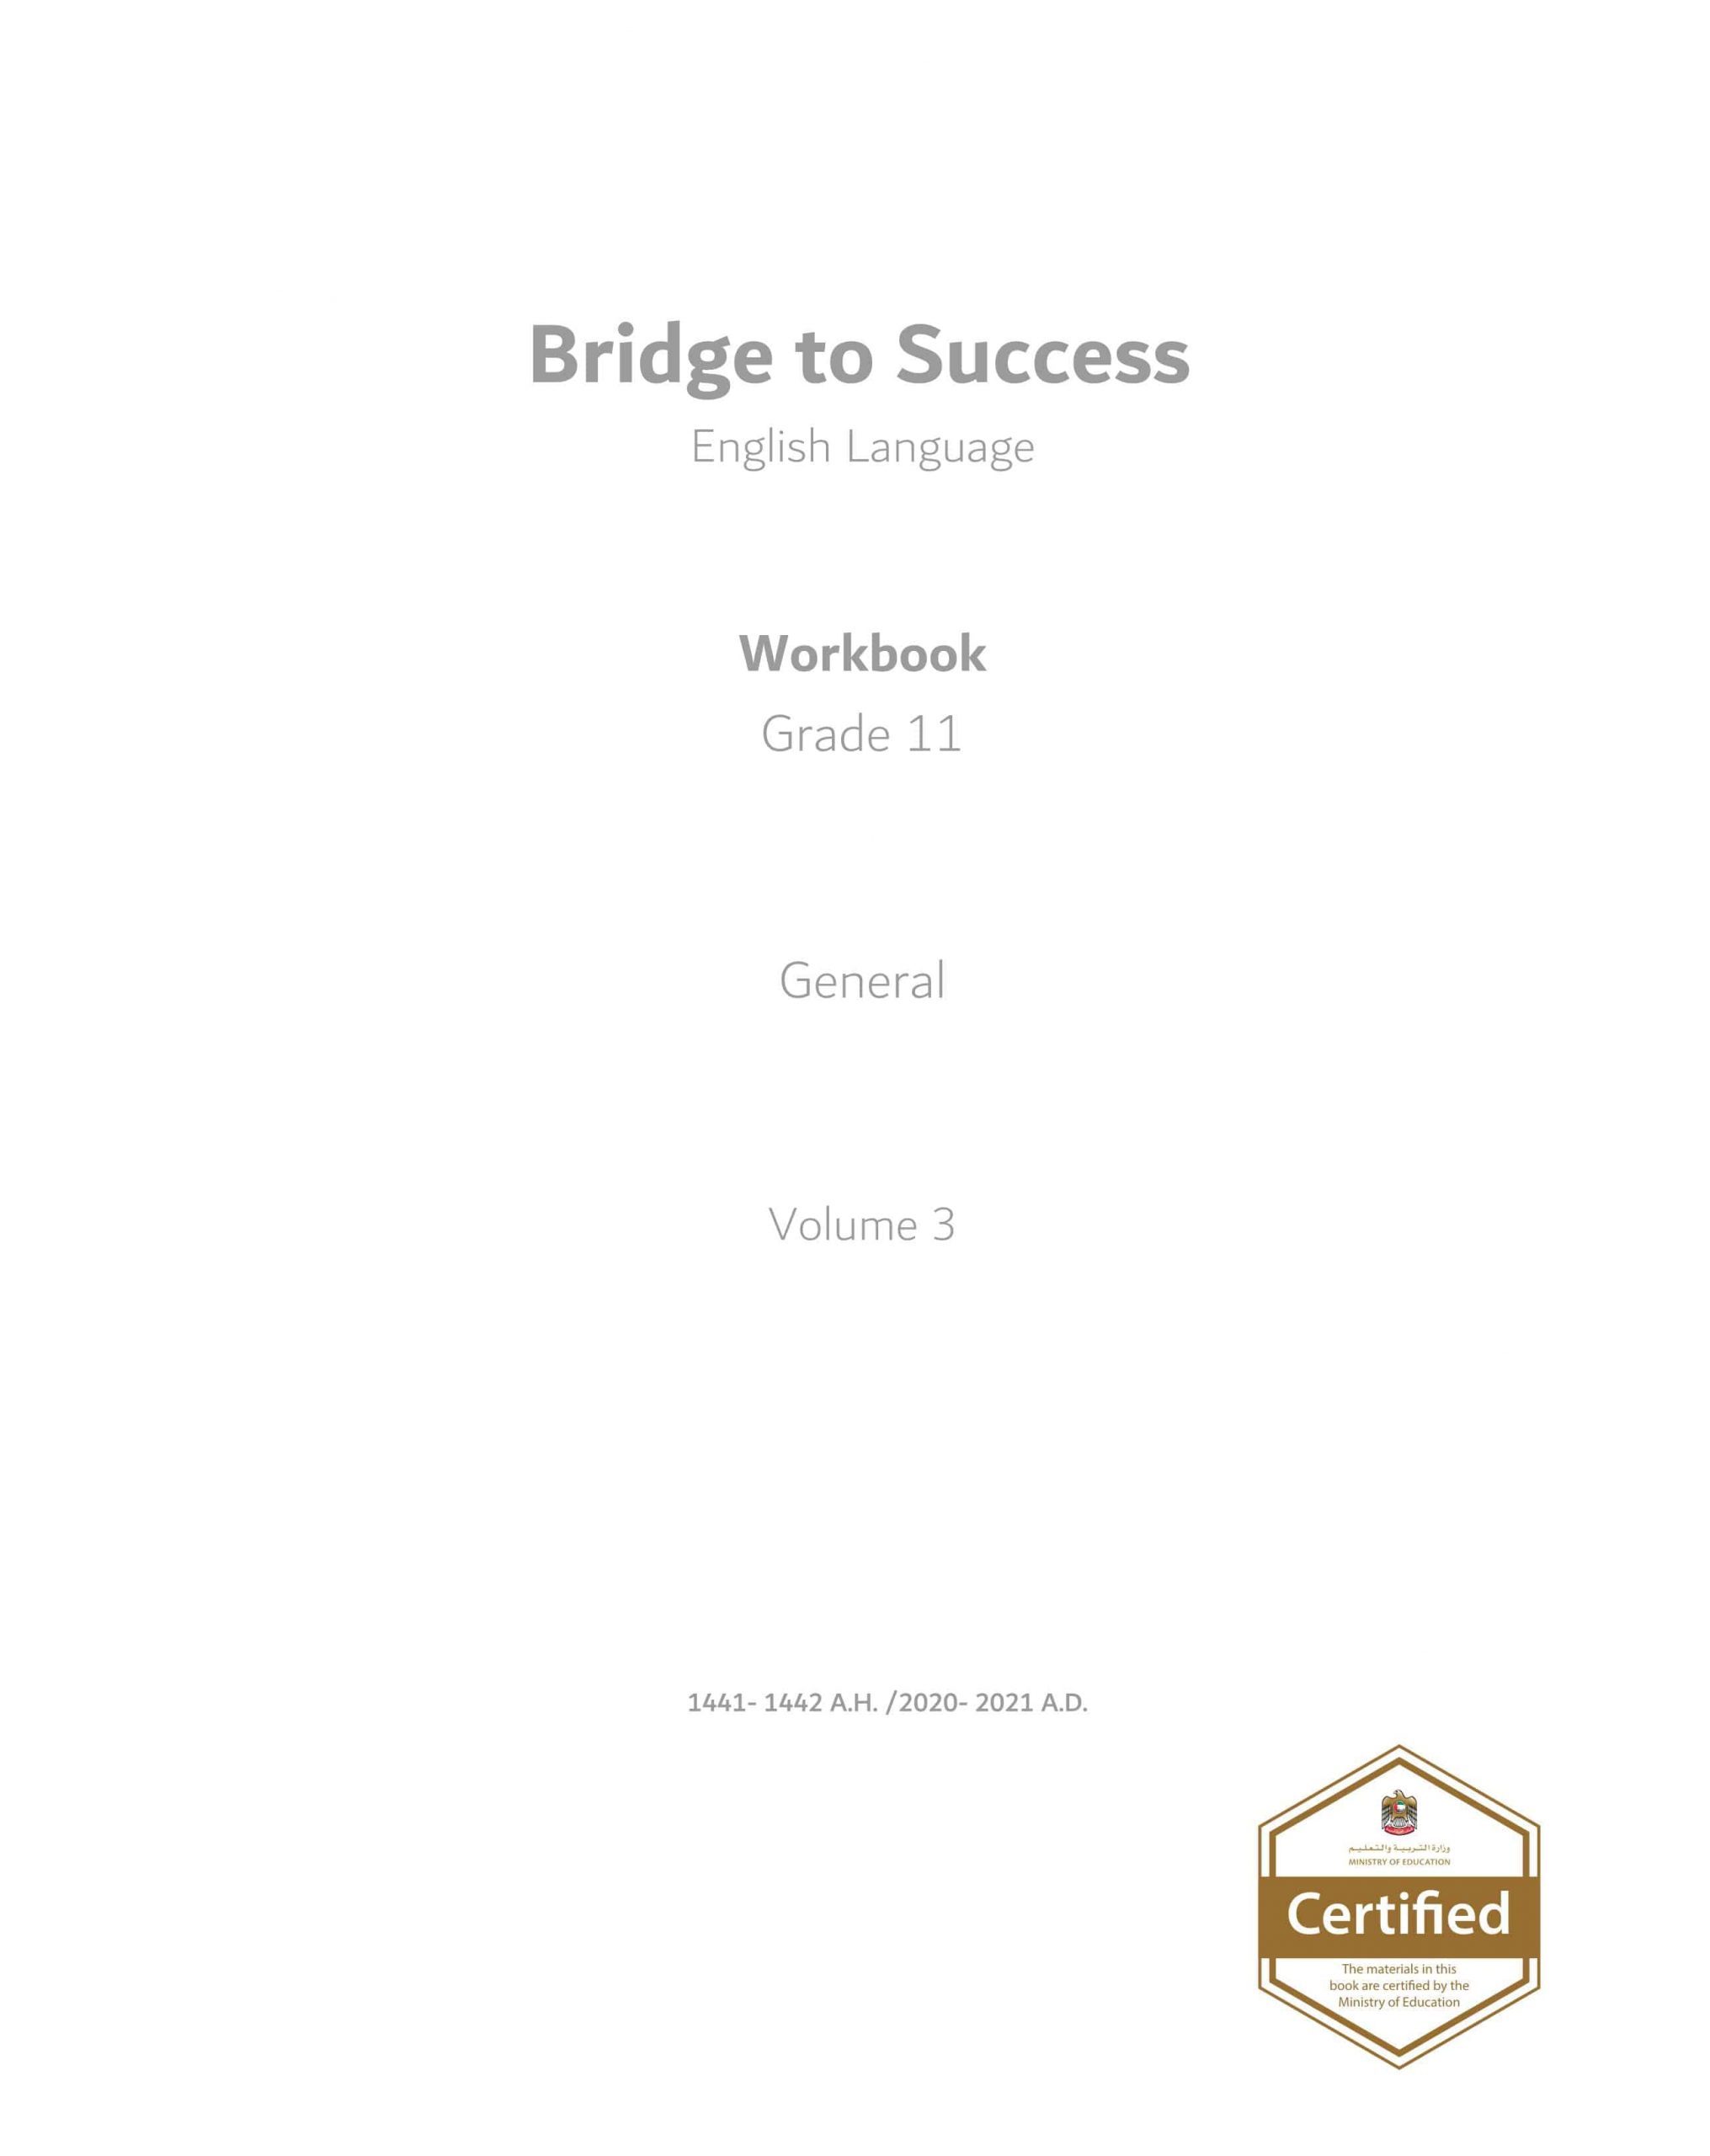 كتاب النشاط Work book الفصل الدراسي الثالث 2020-2021 الصف الحادي عشر مادة اللغة الإنجليزية